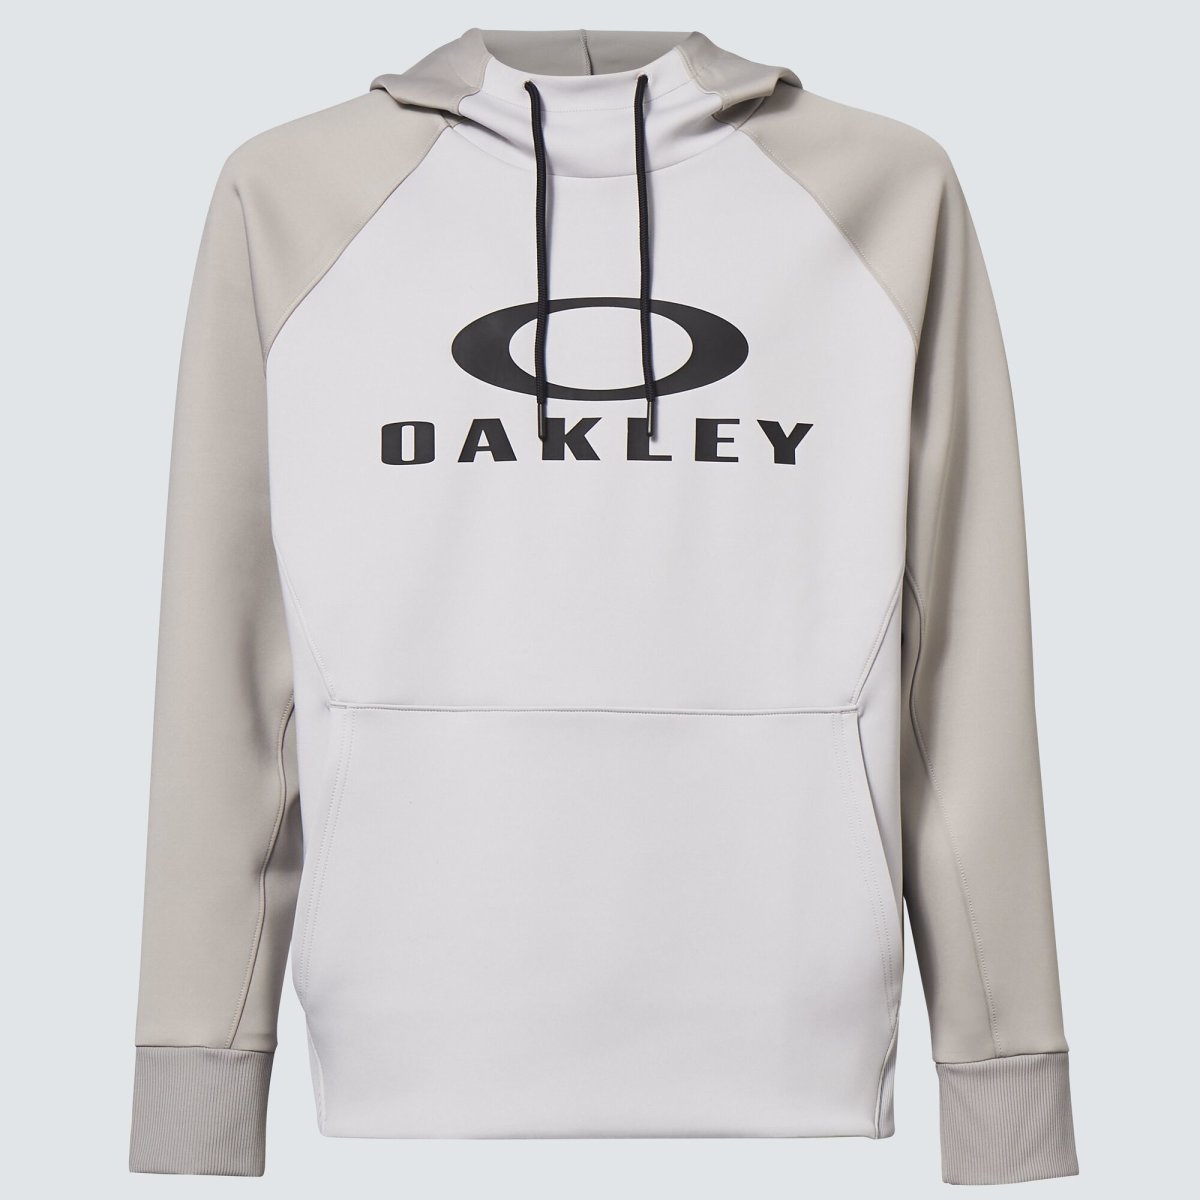 Oakley Sierra Dwr Fleece Hoody 2.0 von Oakley